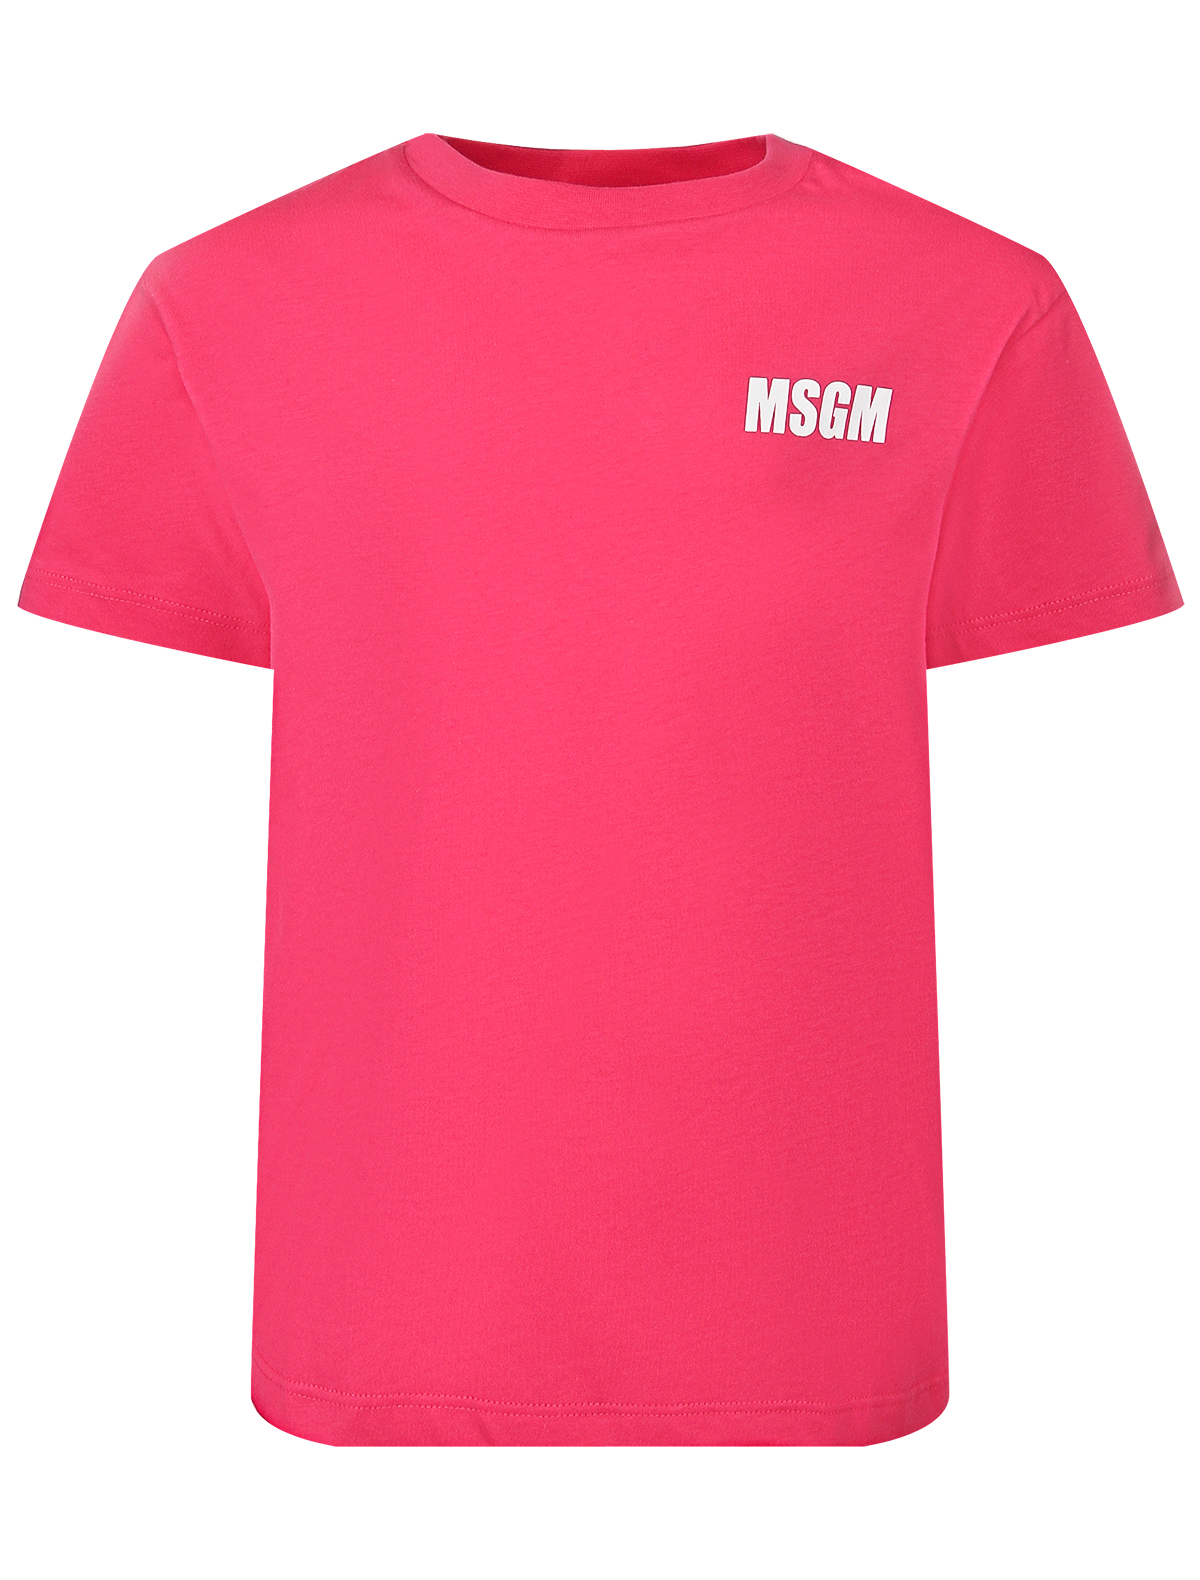 футболка msgm для девочки, розовая